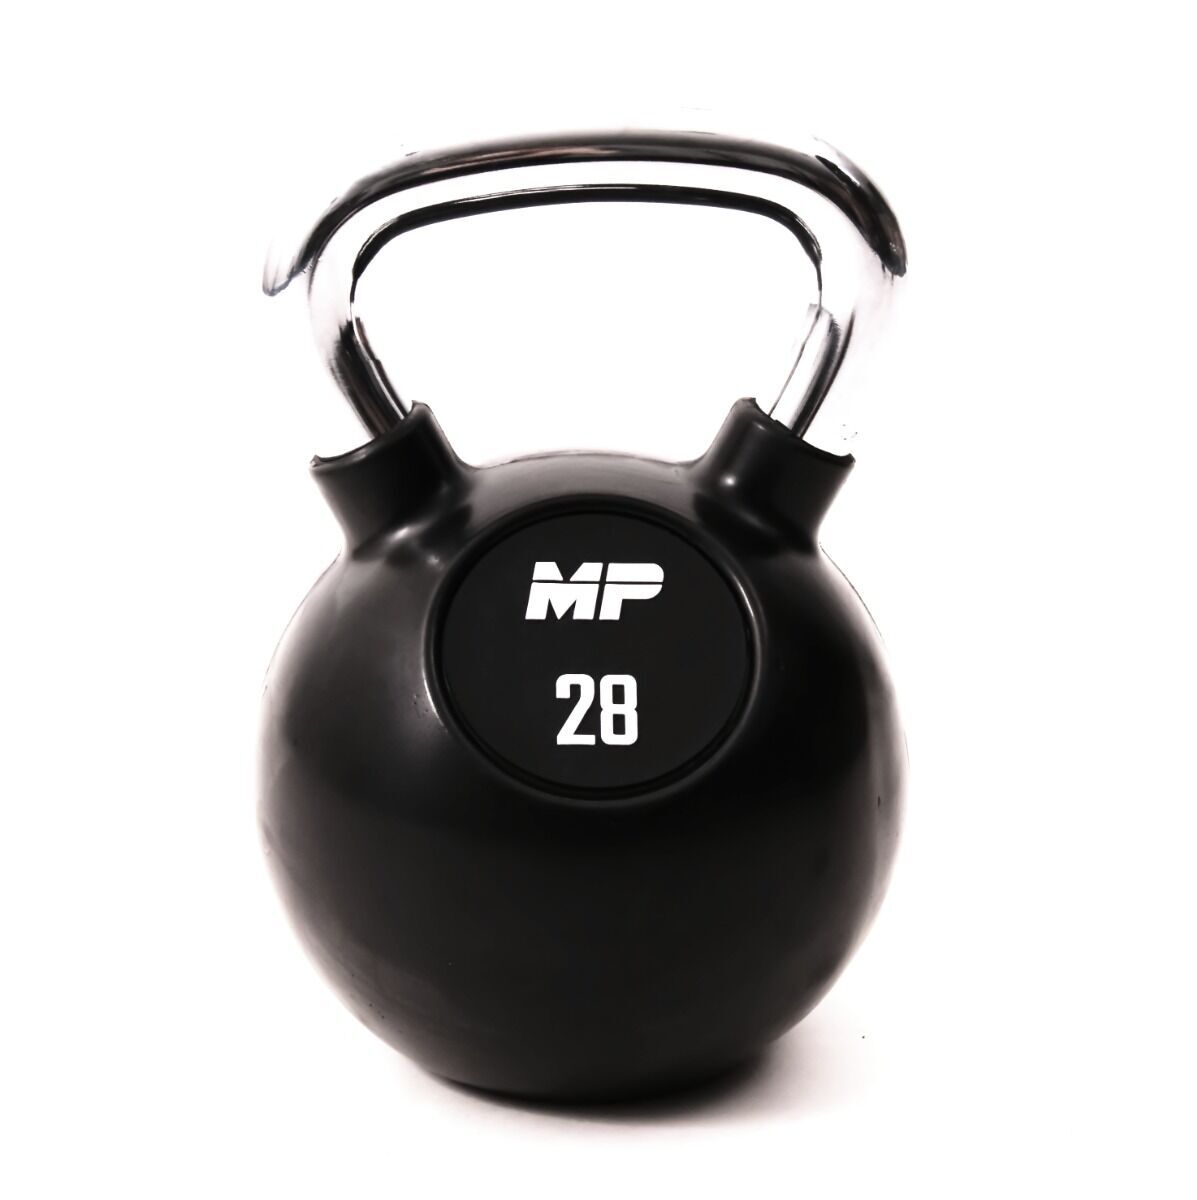 Muscle Power Rubberen Kettlebell - Zwart - 28 kg